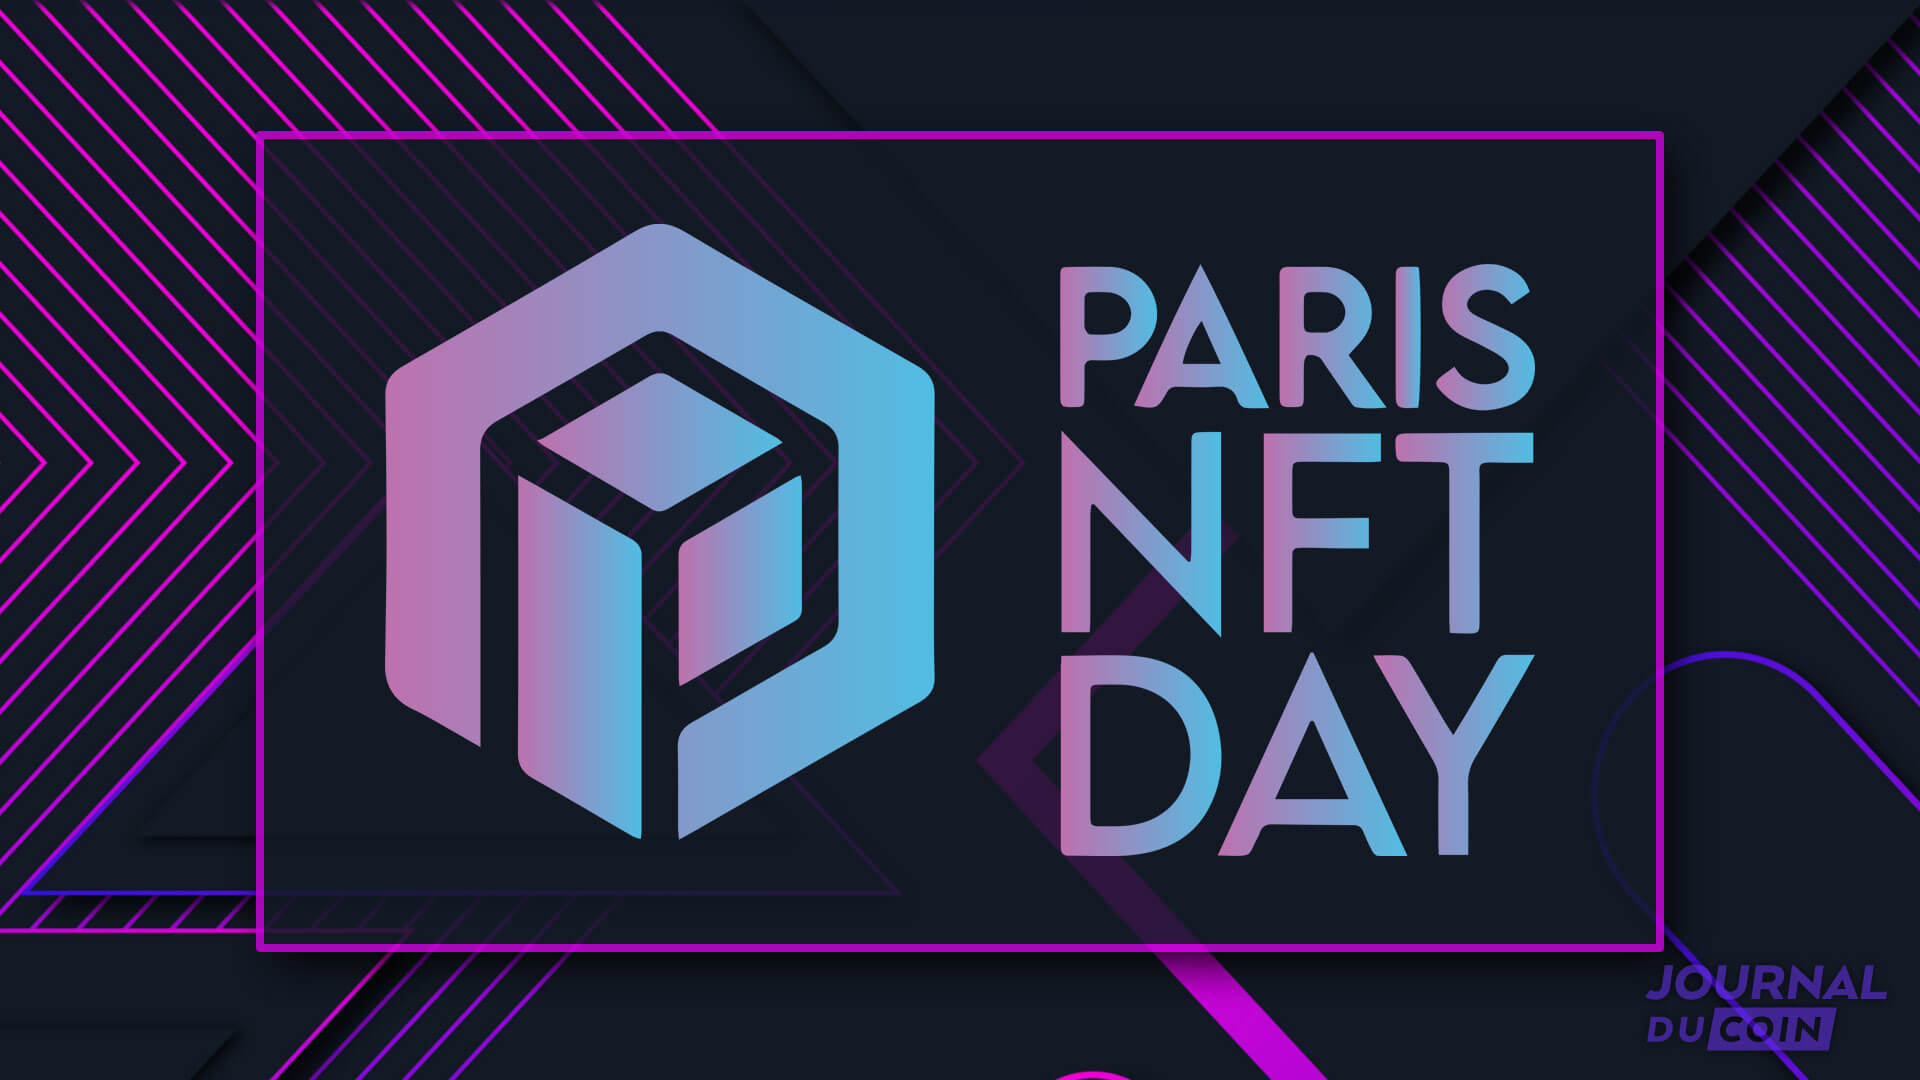 Paris NFT Day 2022